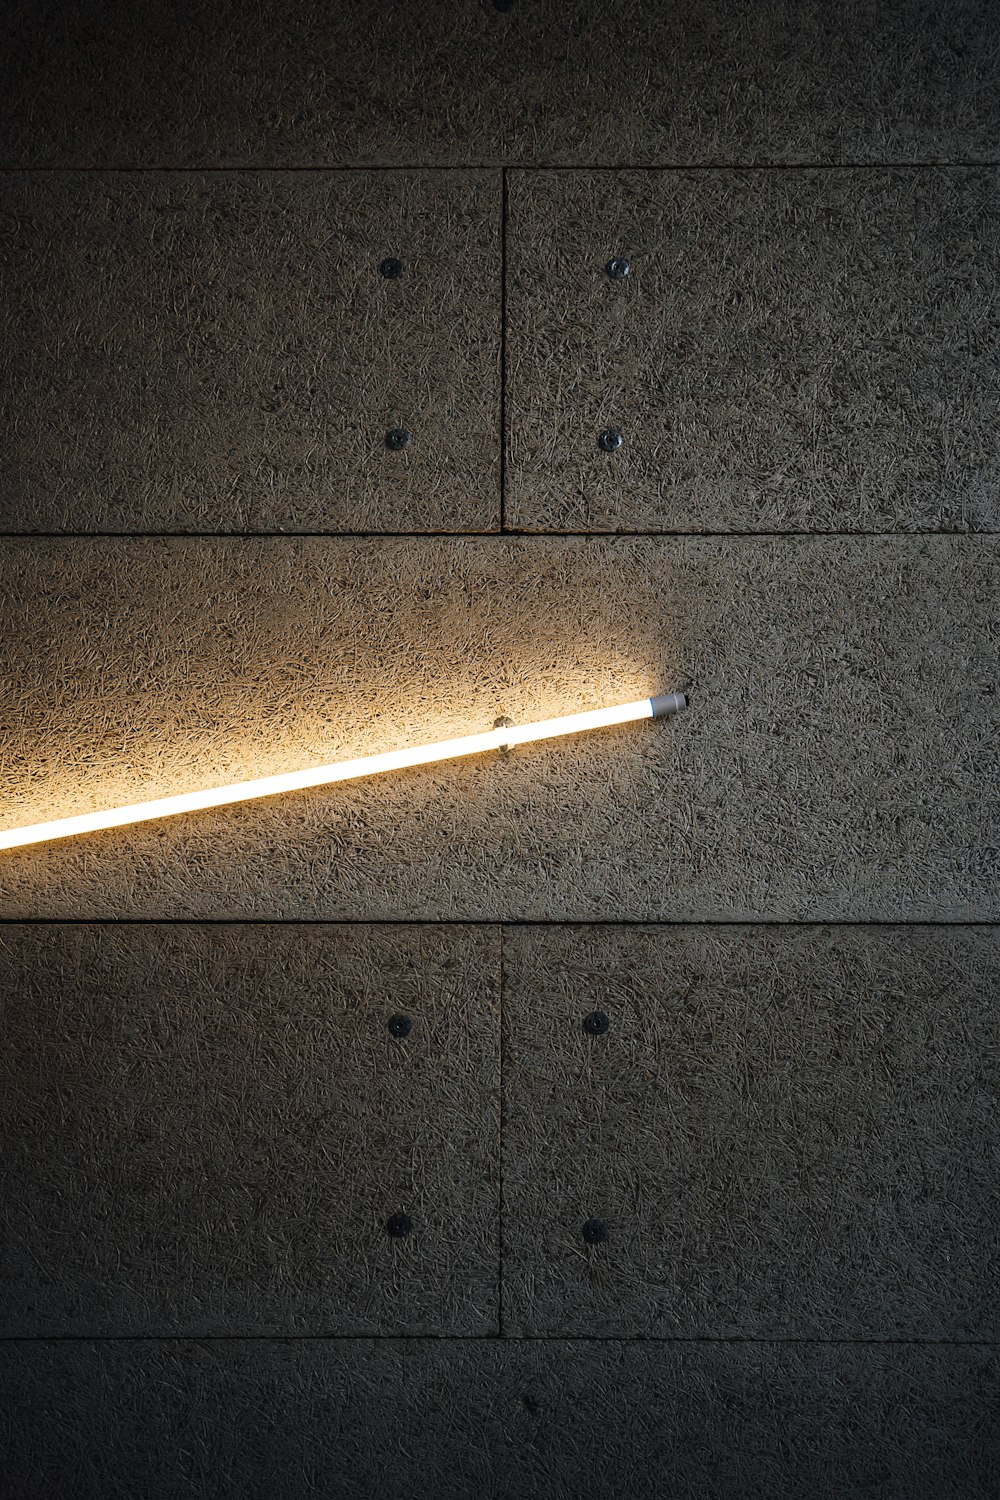 transportabel Taknemmelig overraskende White and brown cigarette stick on black floor tiles photo – Free Light  Image on Unsplash